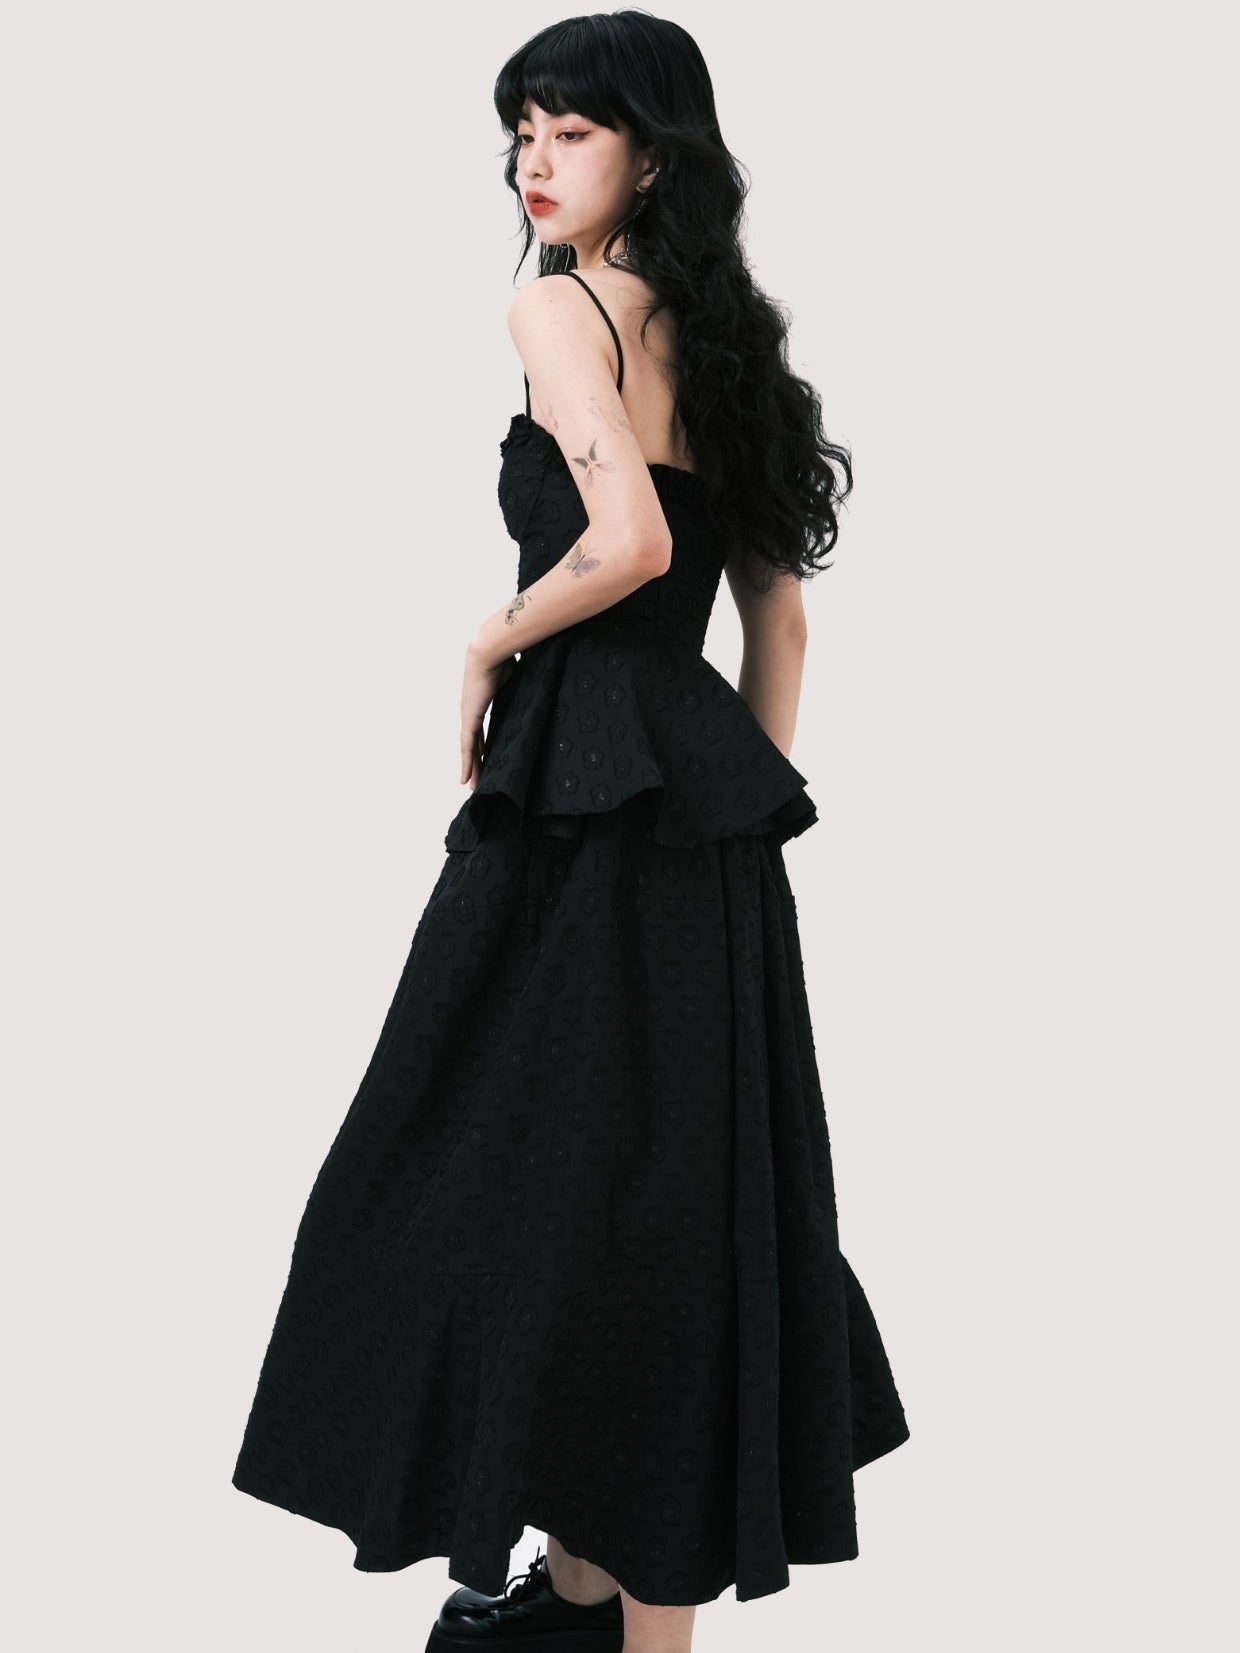 Noir Elegance Peplum Dress Set - chiclara